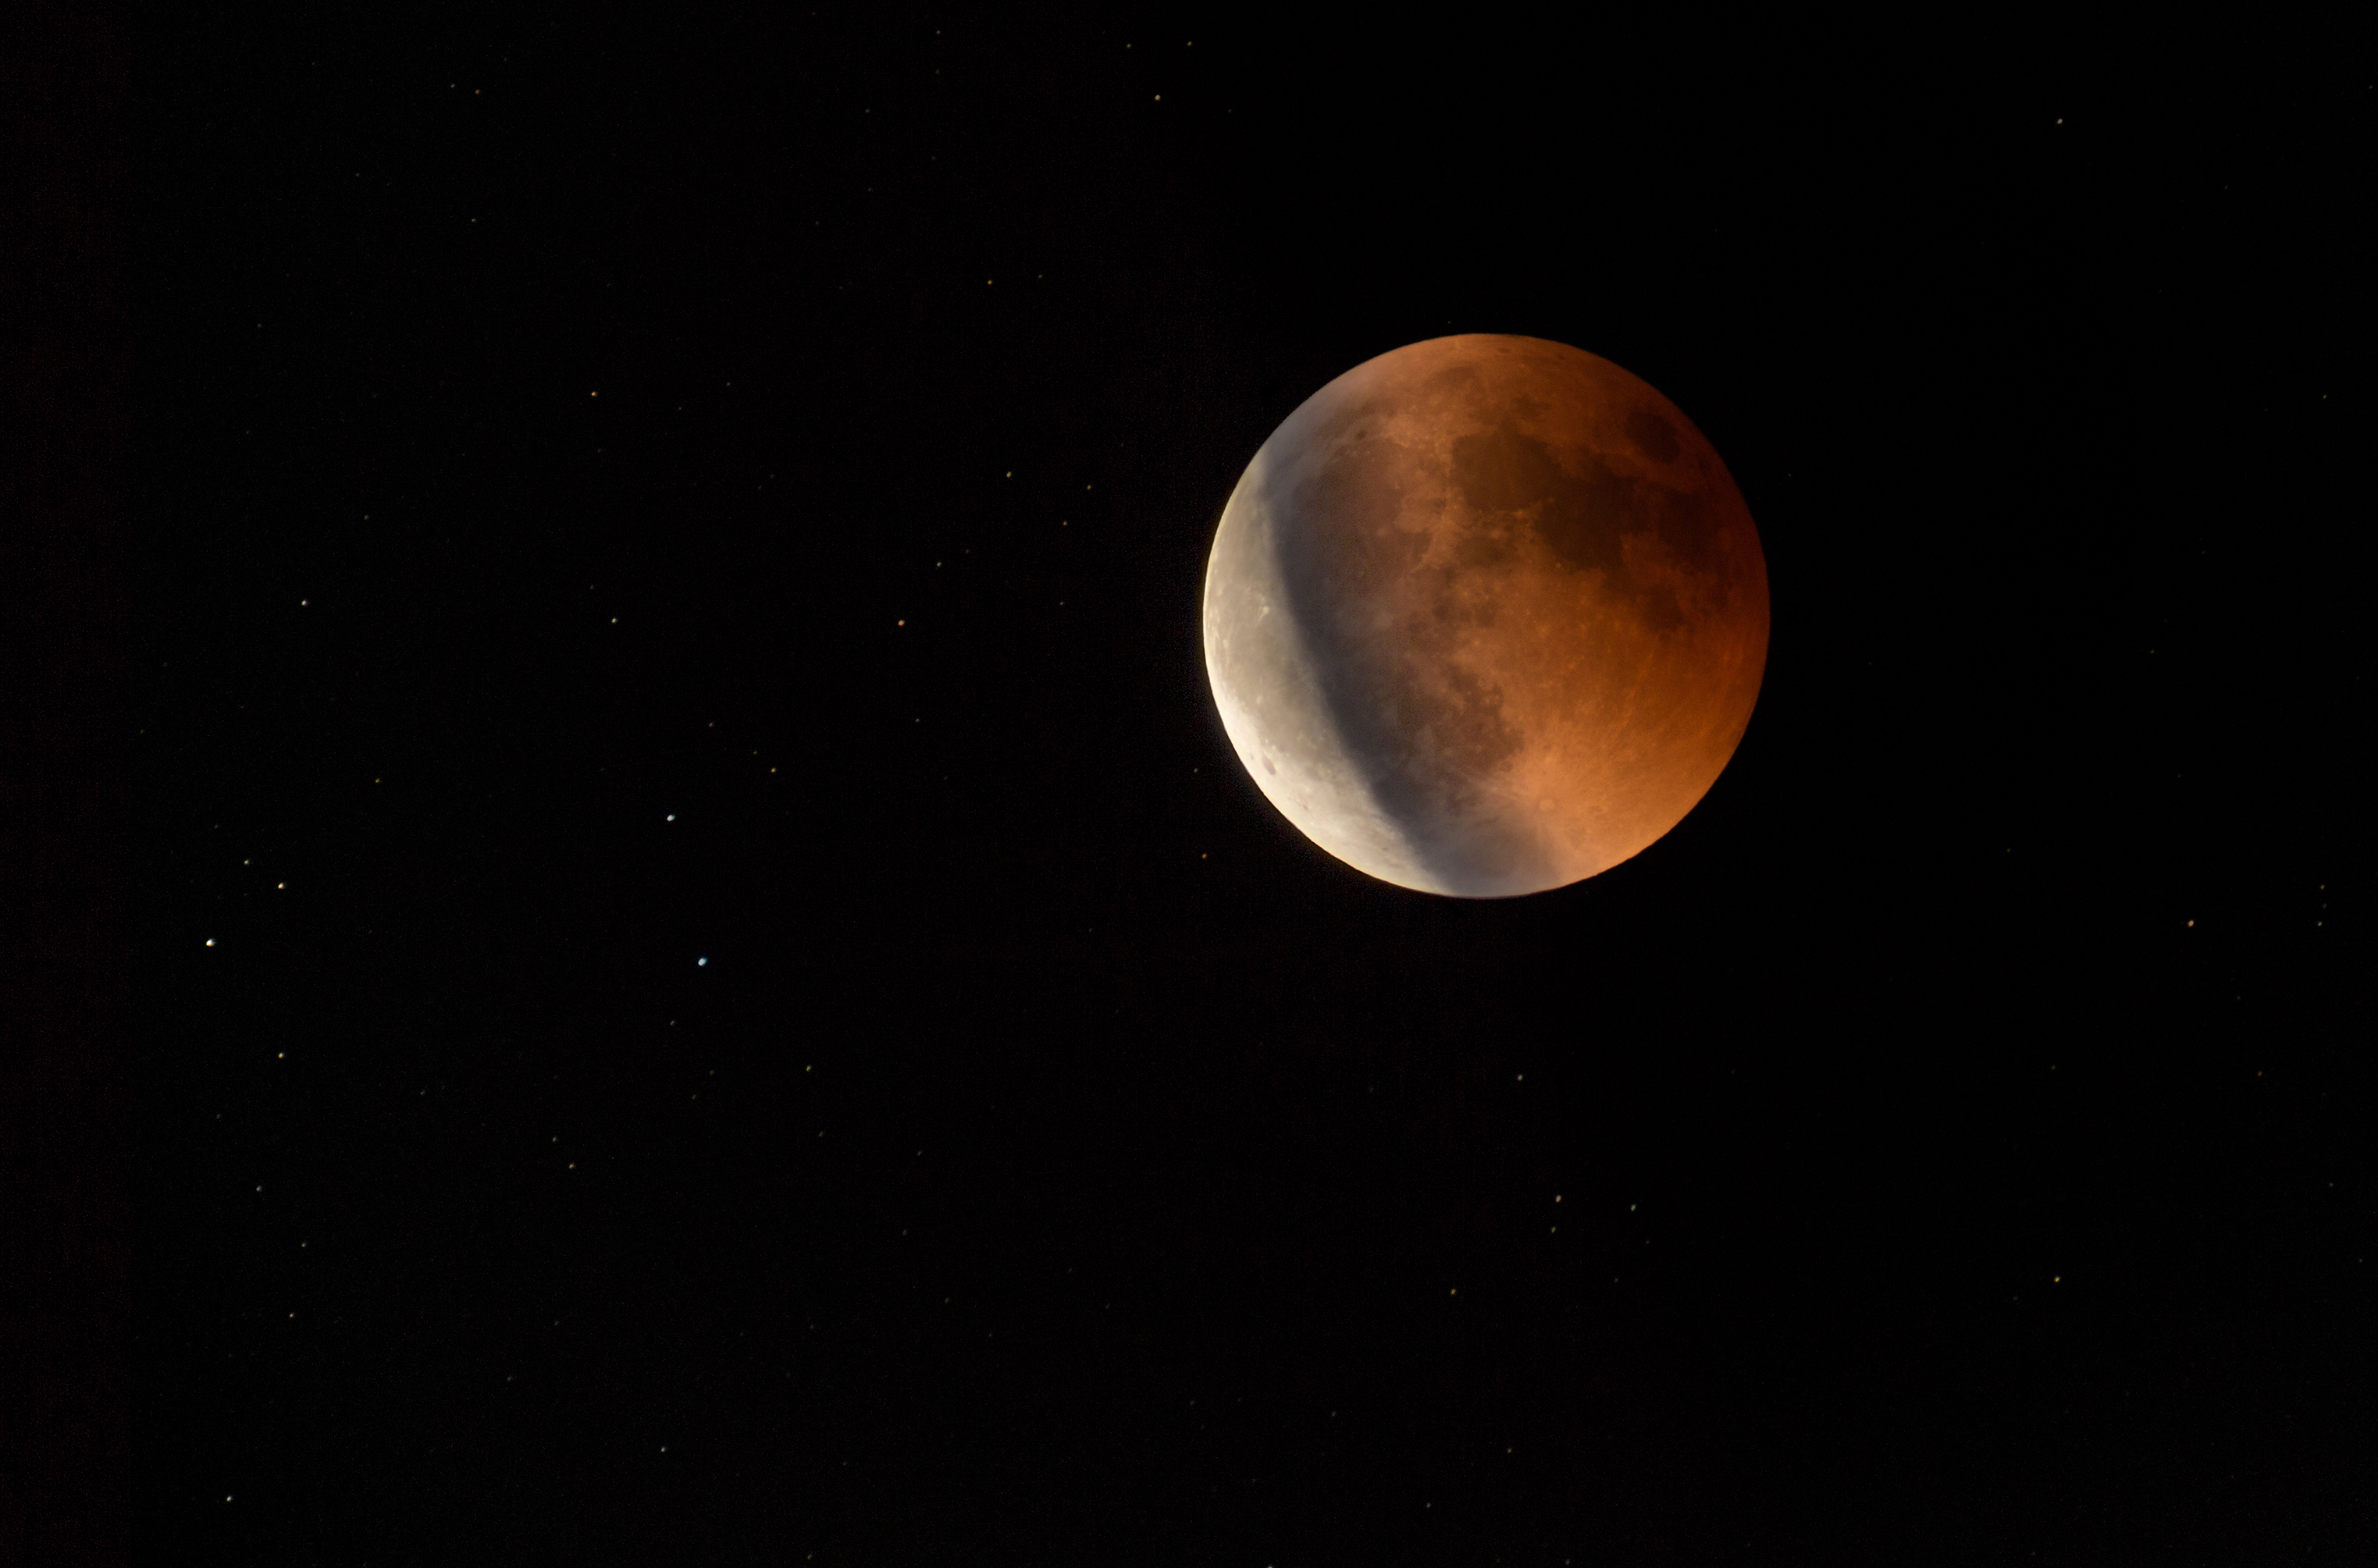 eclipse-lunar-en-3-fases